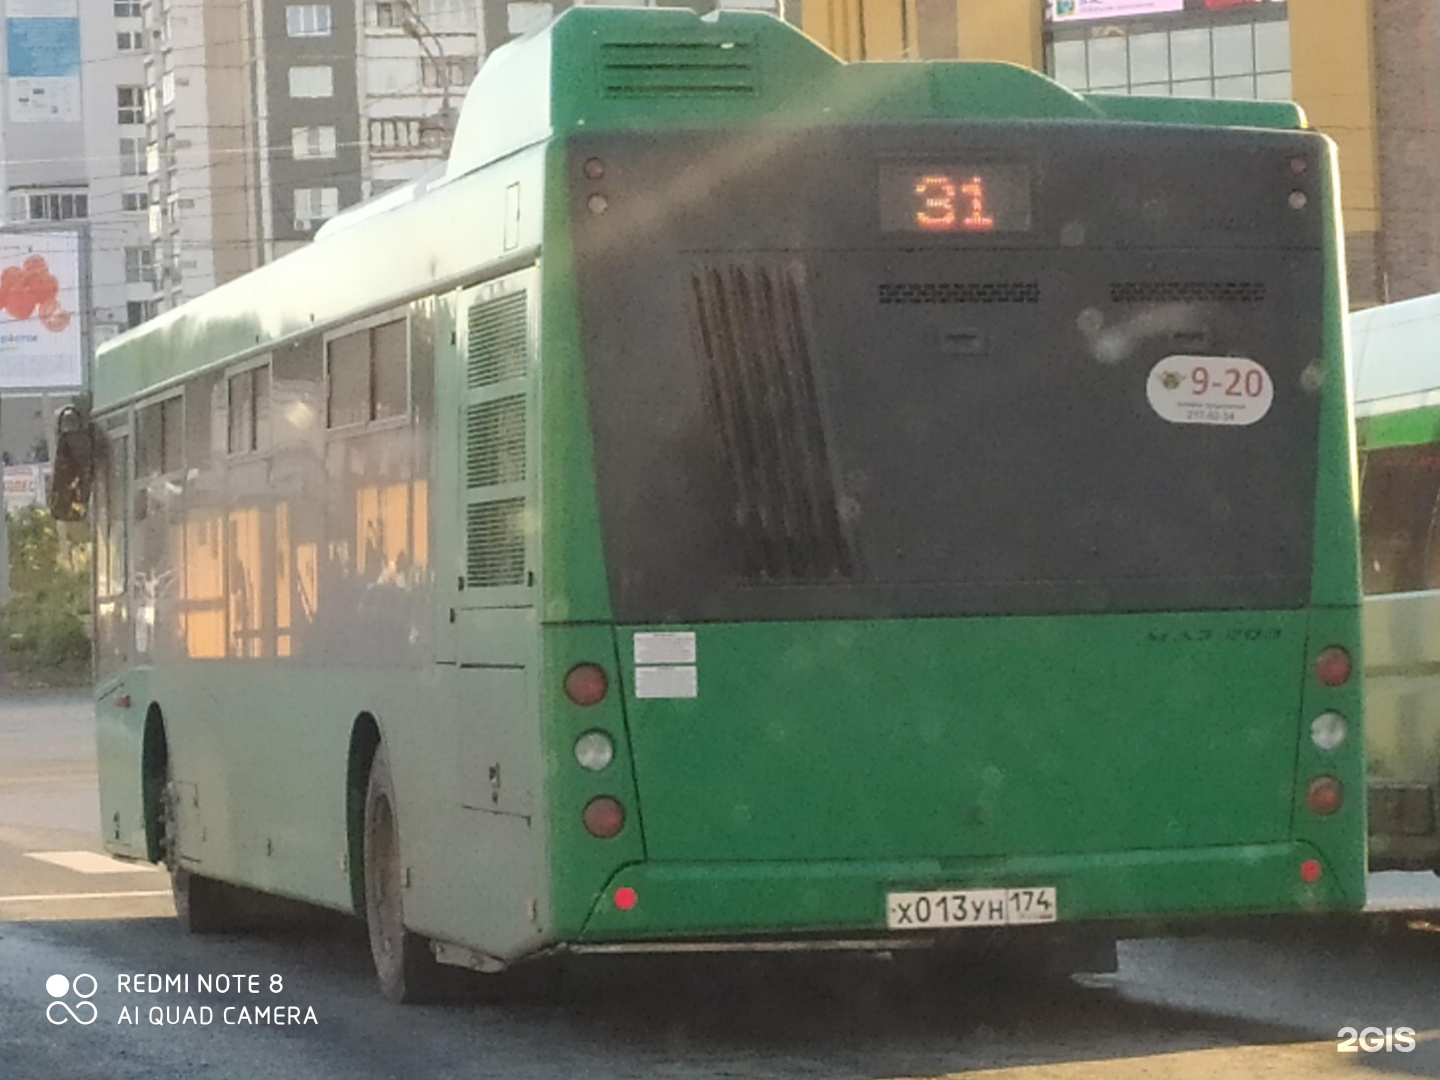 Автобус 31 изменения